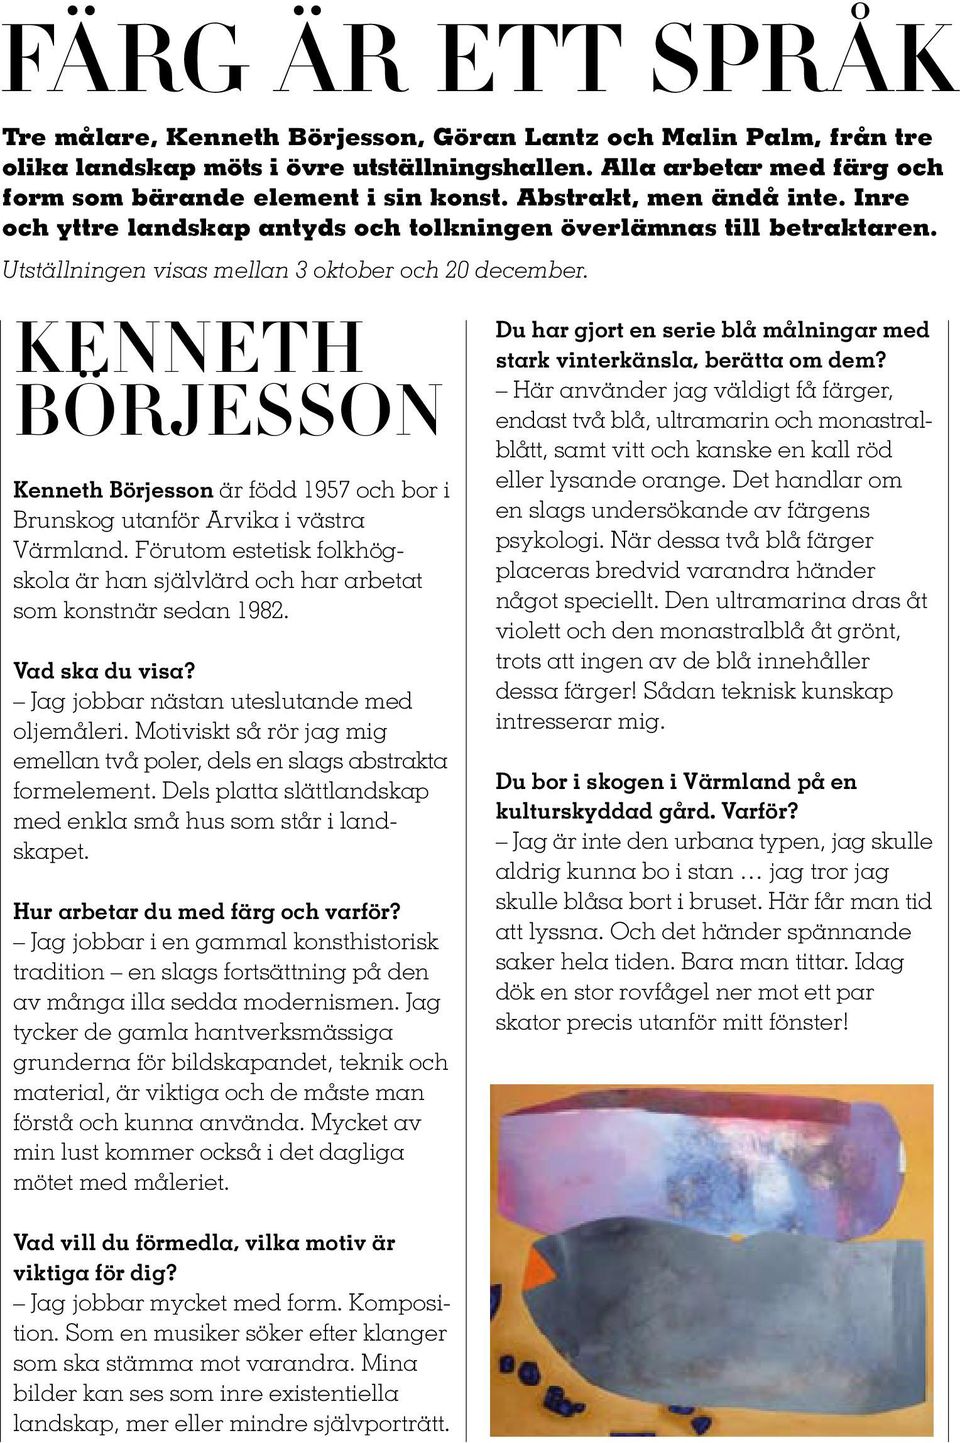 KENNETh börjesson Kenneth Börjesson är född 1957 och bor i Brunskog utanför Arvika i västra Värmland. Förutom estetisk folkhögskola är han självlärd och har arbetat som konstnär sedan 1982.